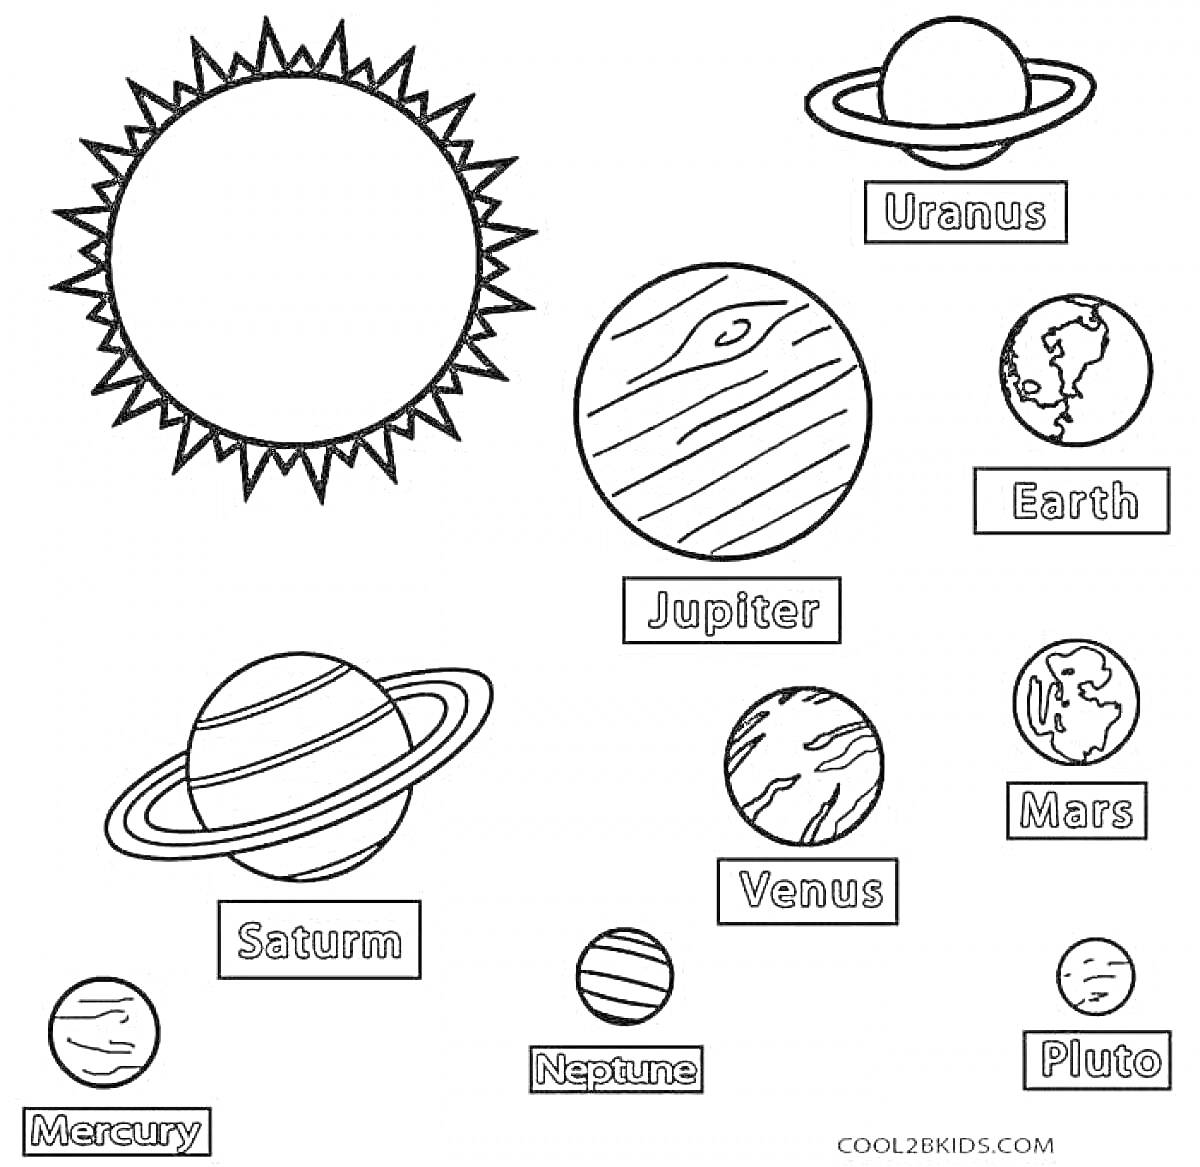 Раскраска планеты и солнце, расположенные по отдельности, с подписями